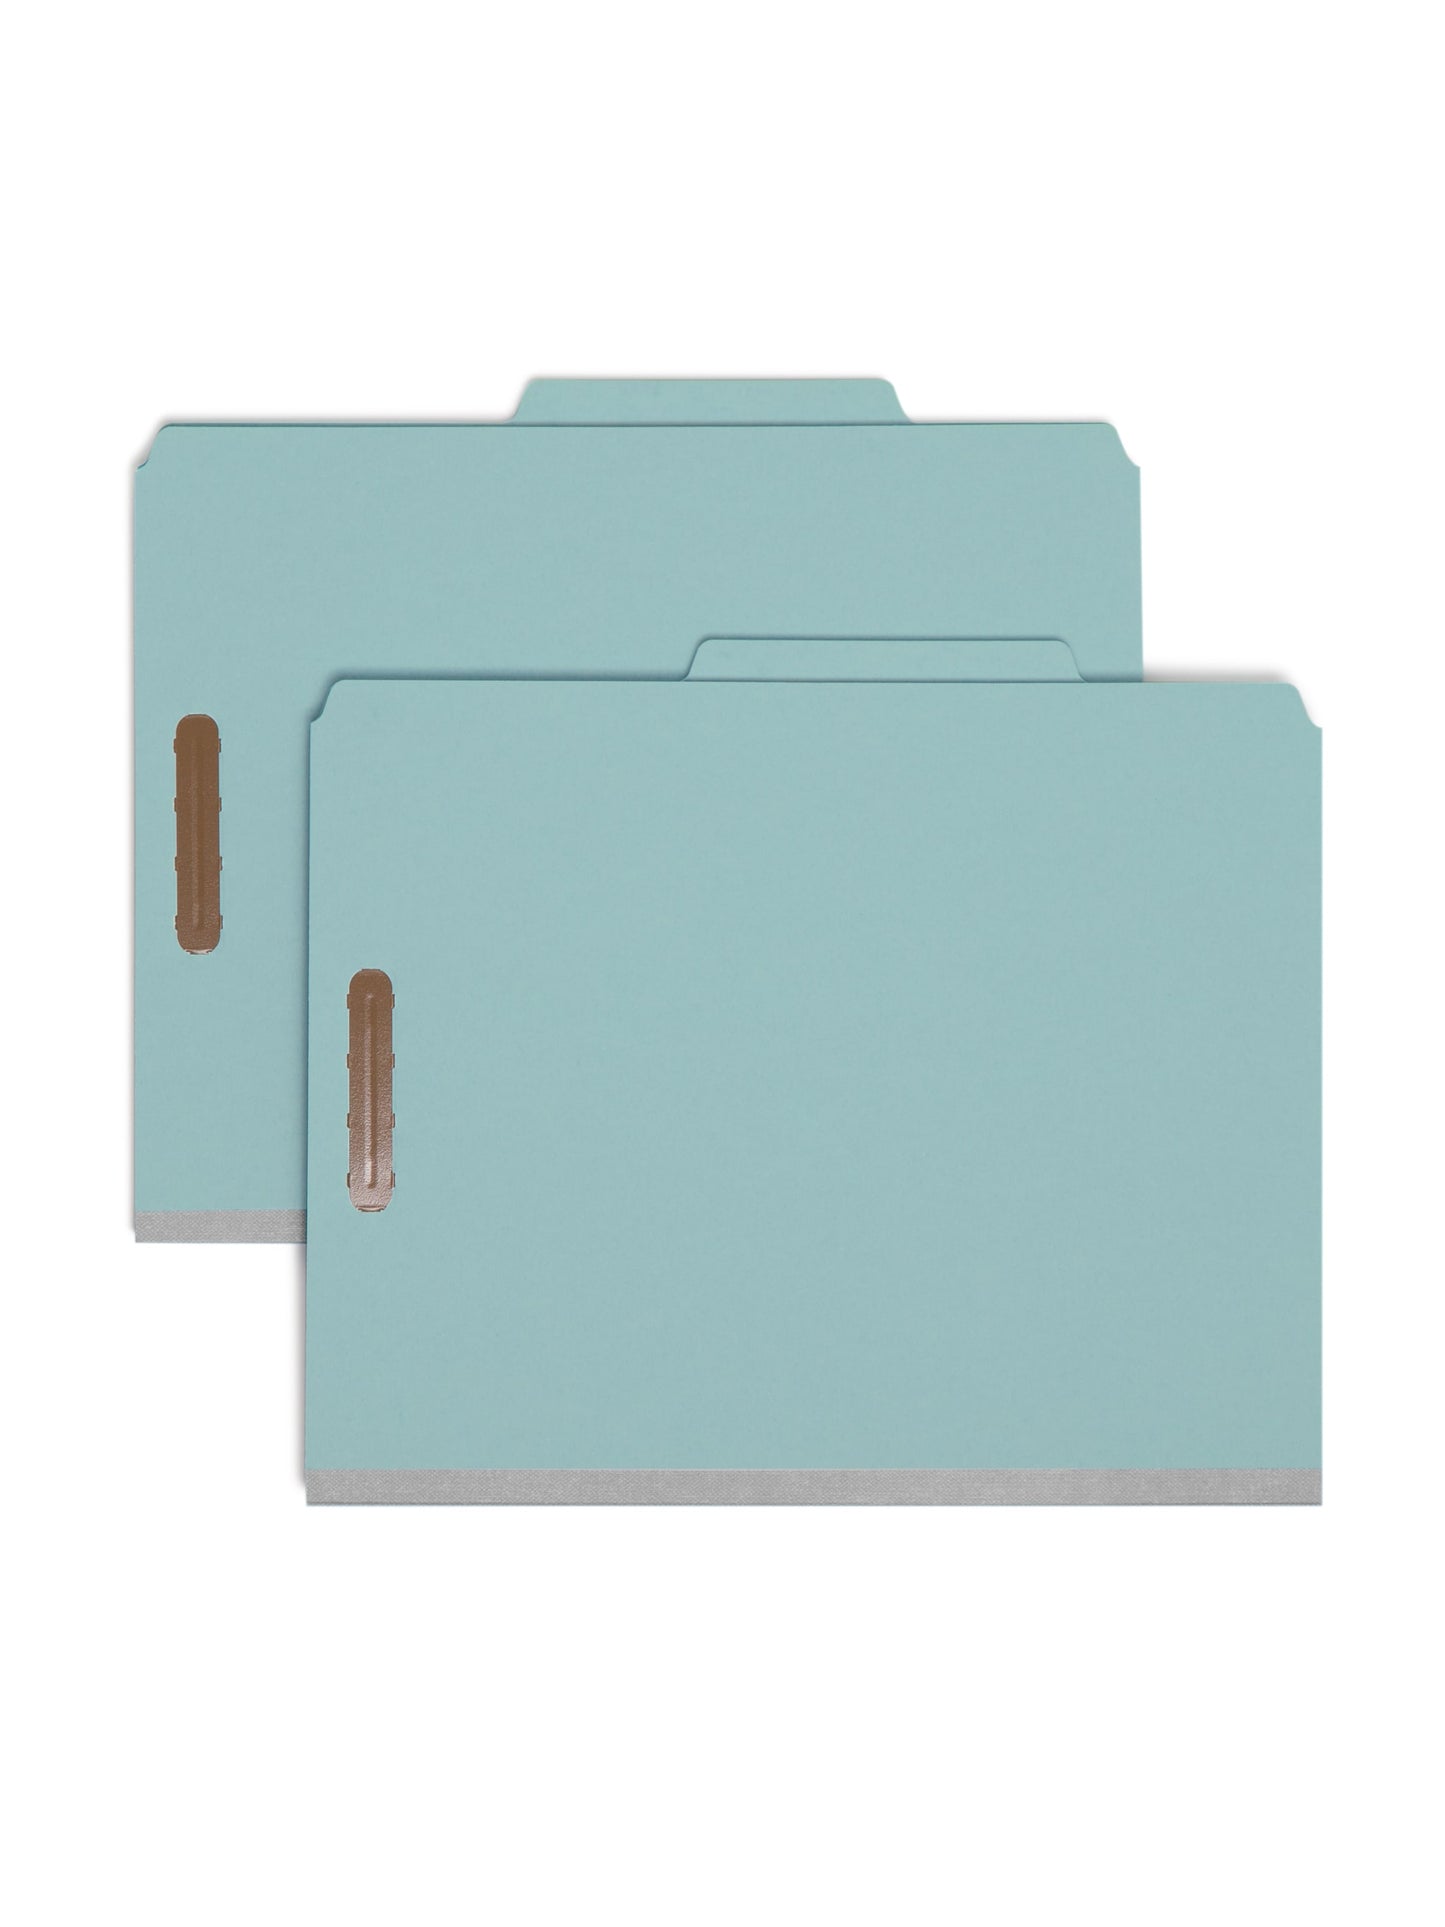 Pressboard Classification File Folders, 1 Divider, 2 inch Expansion, Blue Color, Letter Size, Set of 0, 30086486137219